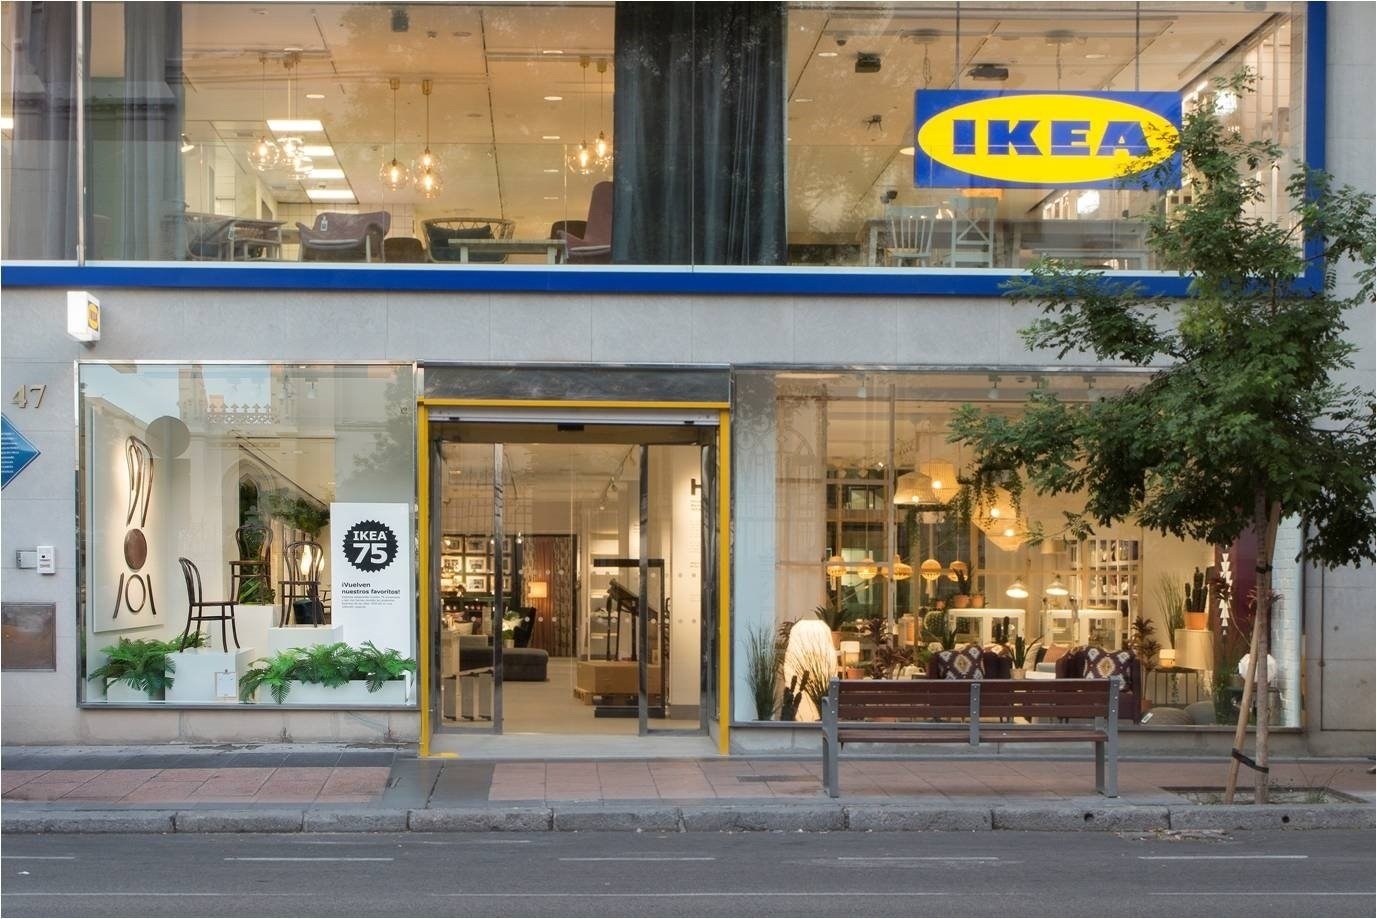 Ikea abrirá 12 tiendas y contratará a 340 personas en Catalunya